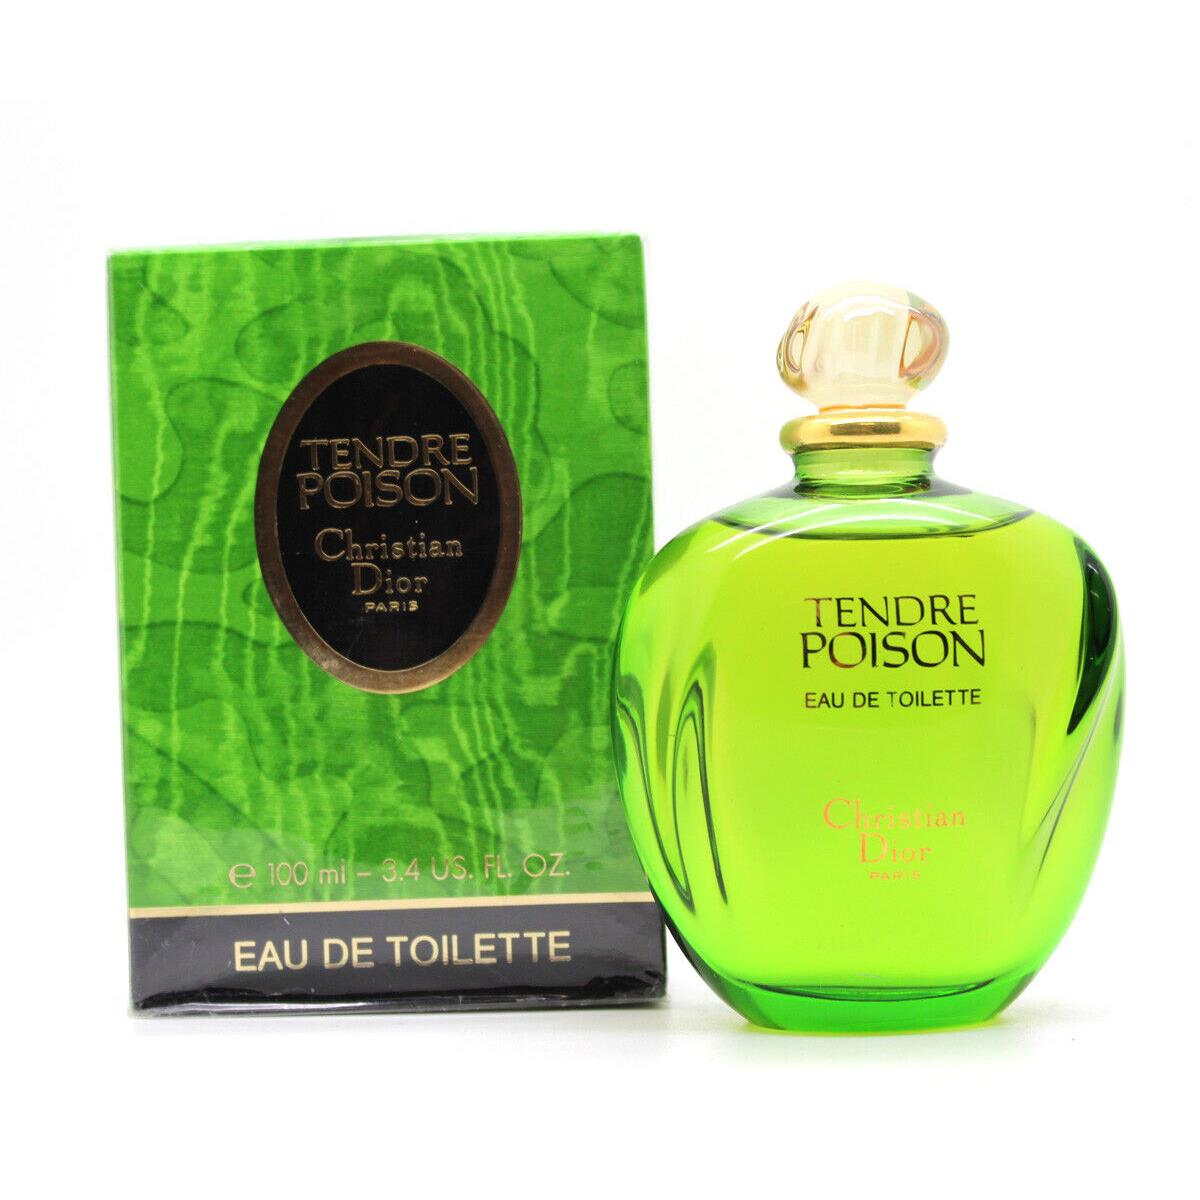 Tendre Poison by Christian Dior 3.4 oz 100 ml Eau de Toilette Splash For Women